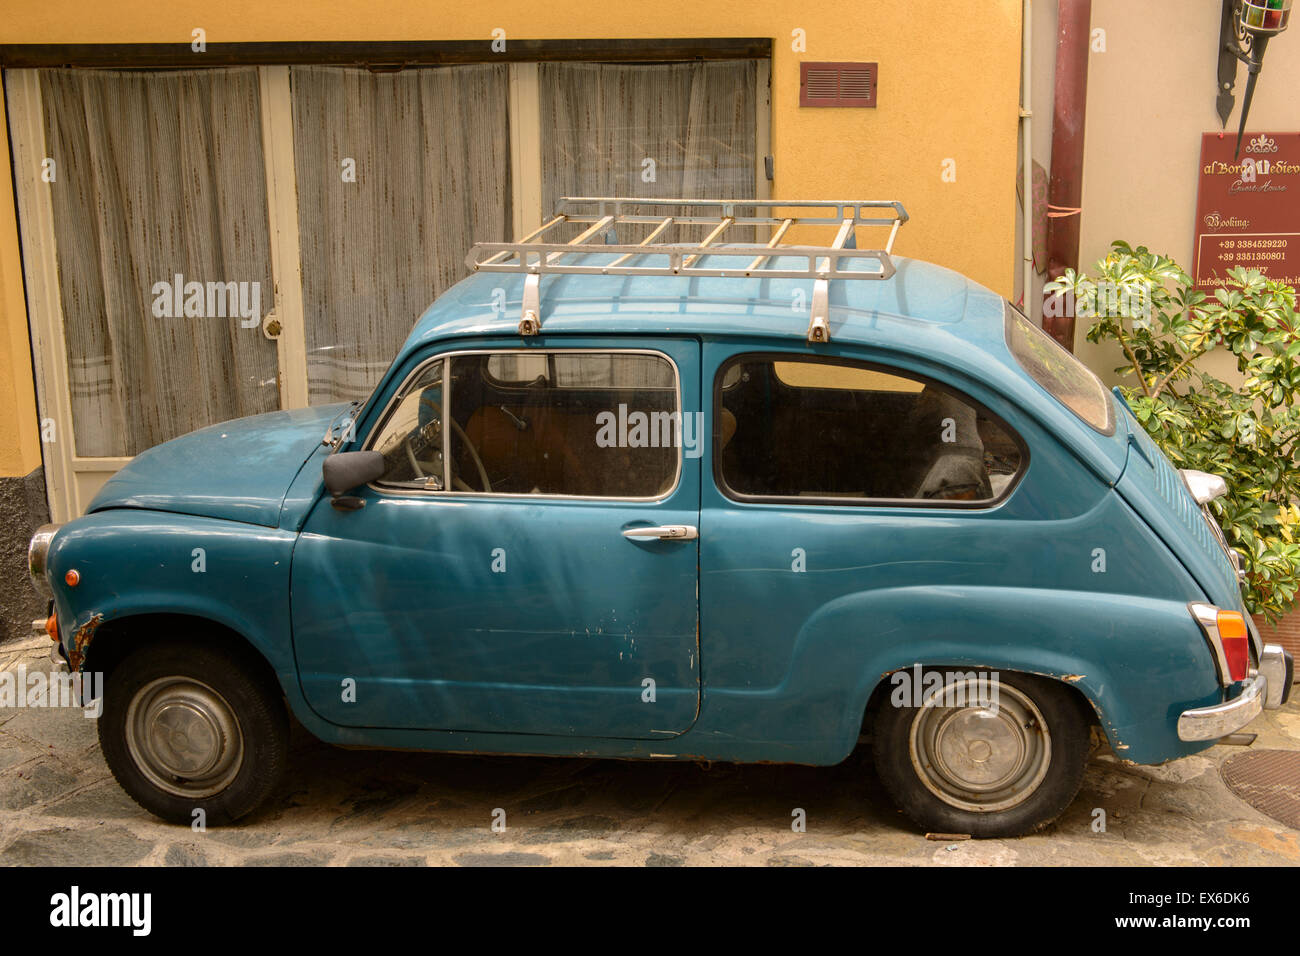 Old Fiat car Stock Photo - Alamy